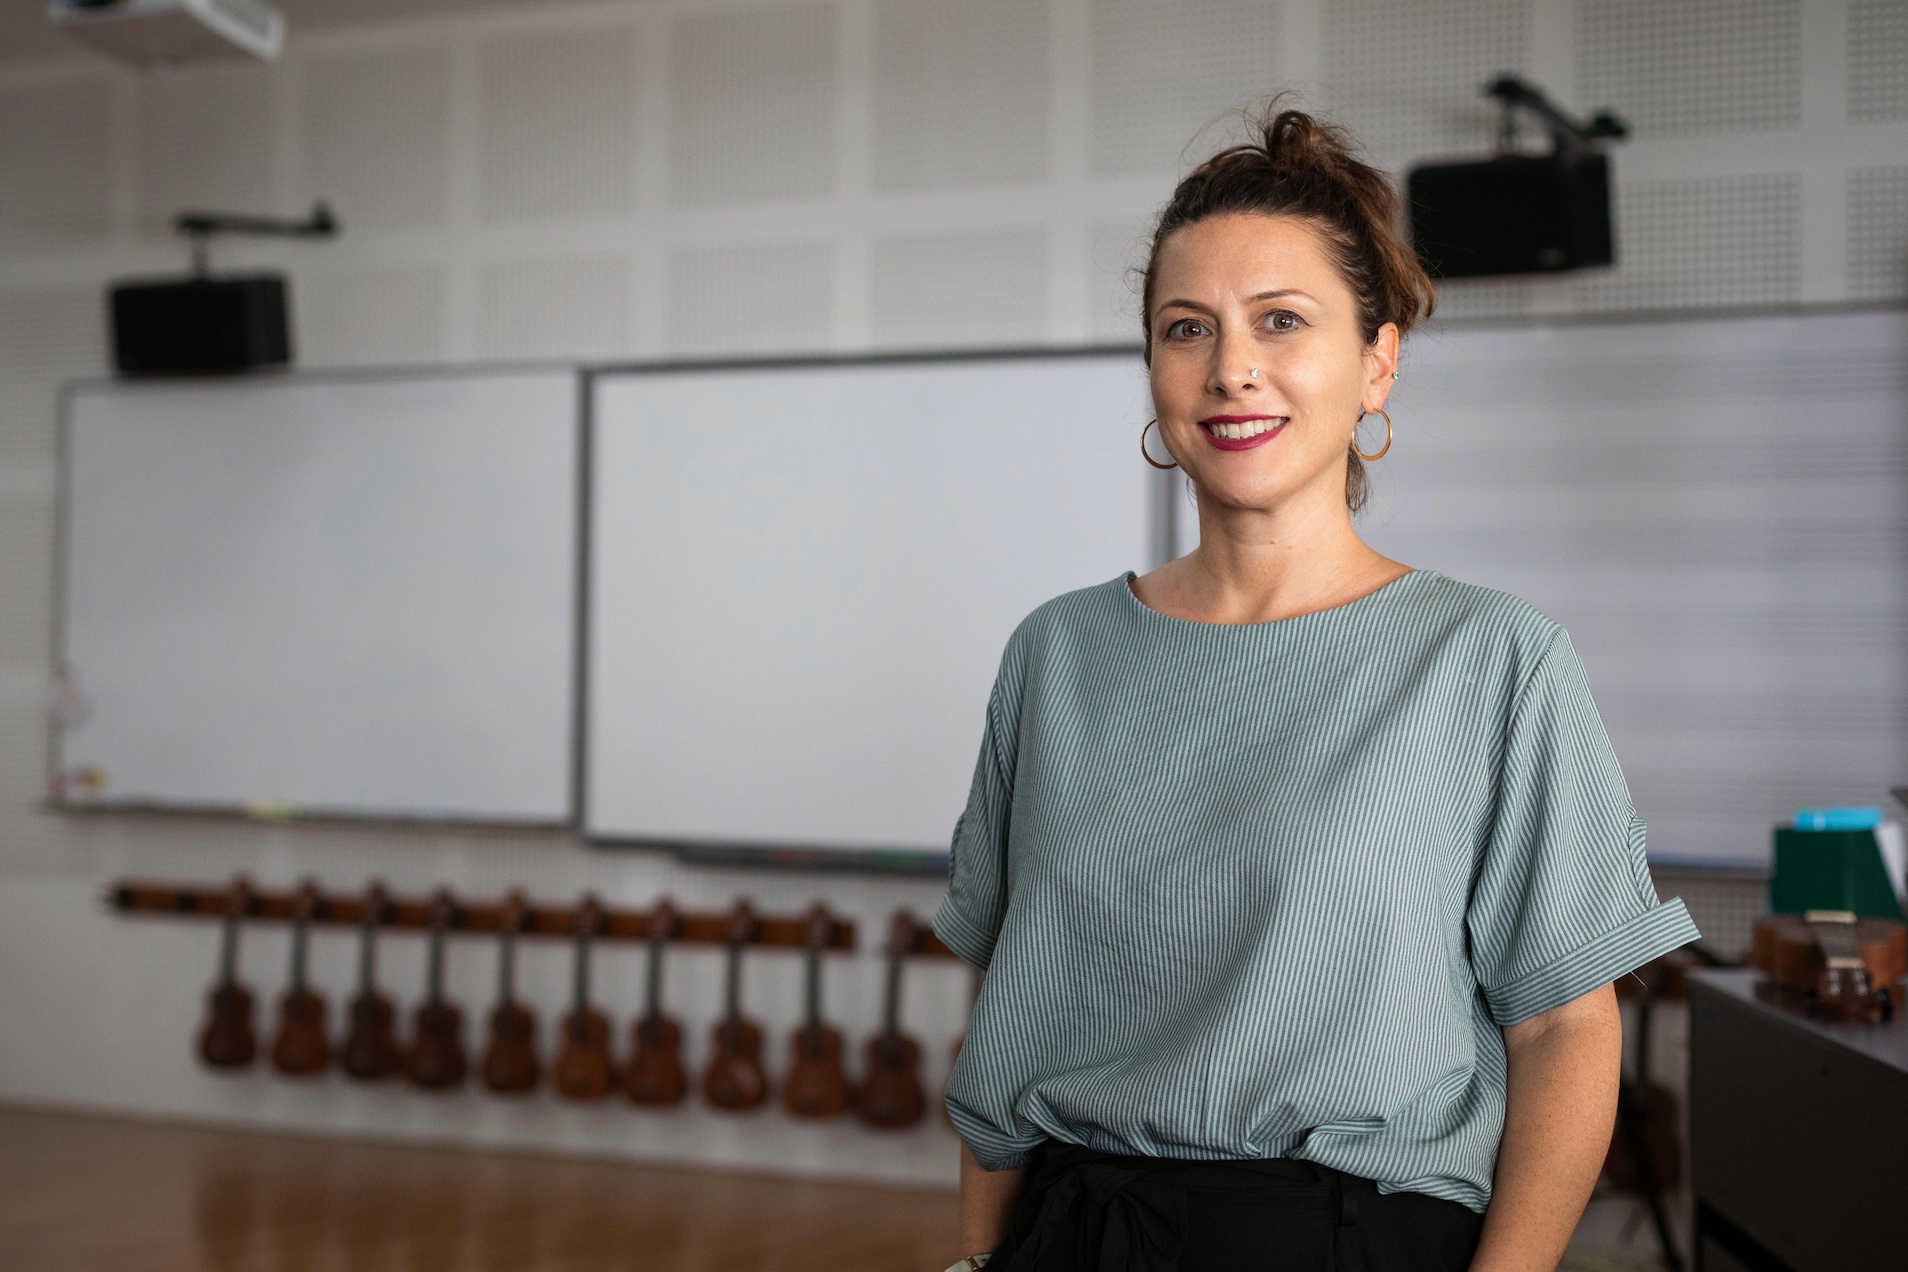 Meet the New Teacher: Lisa Mallett